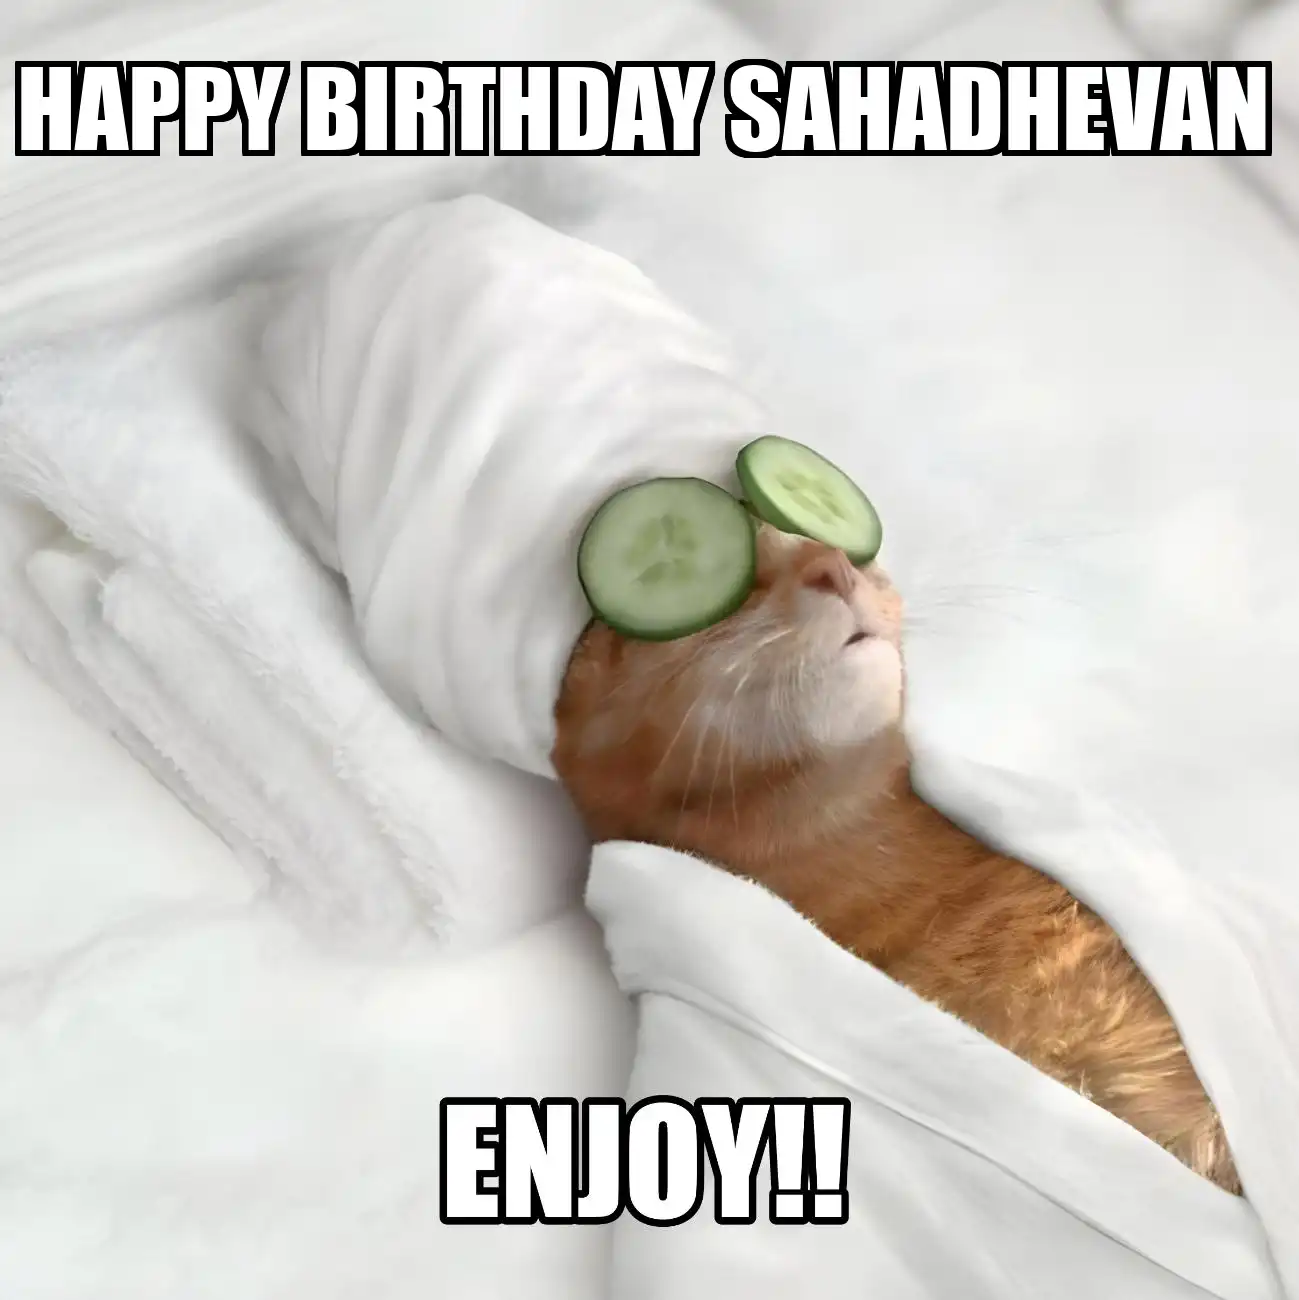 Happy Birthday Sahadhevan Enjoy Cat Meme